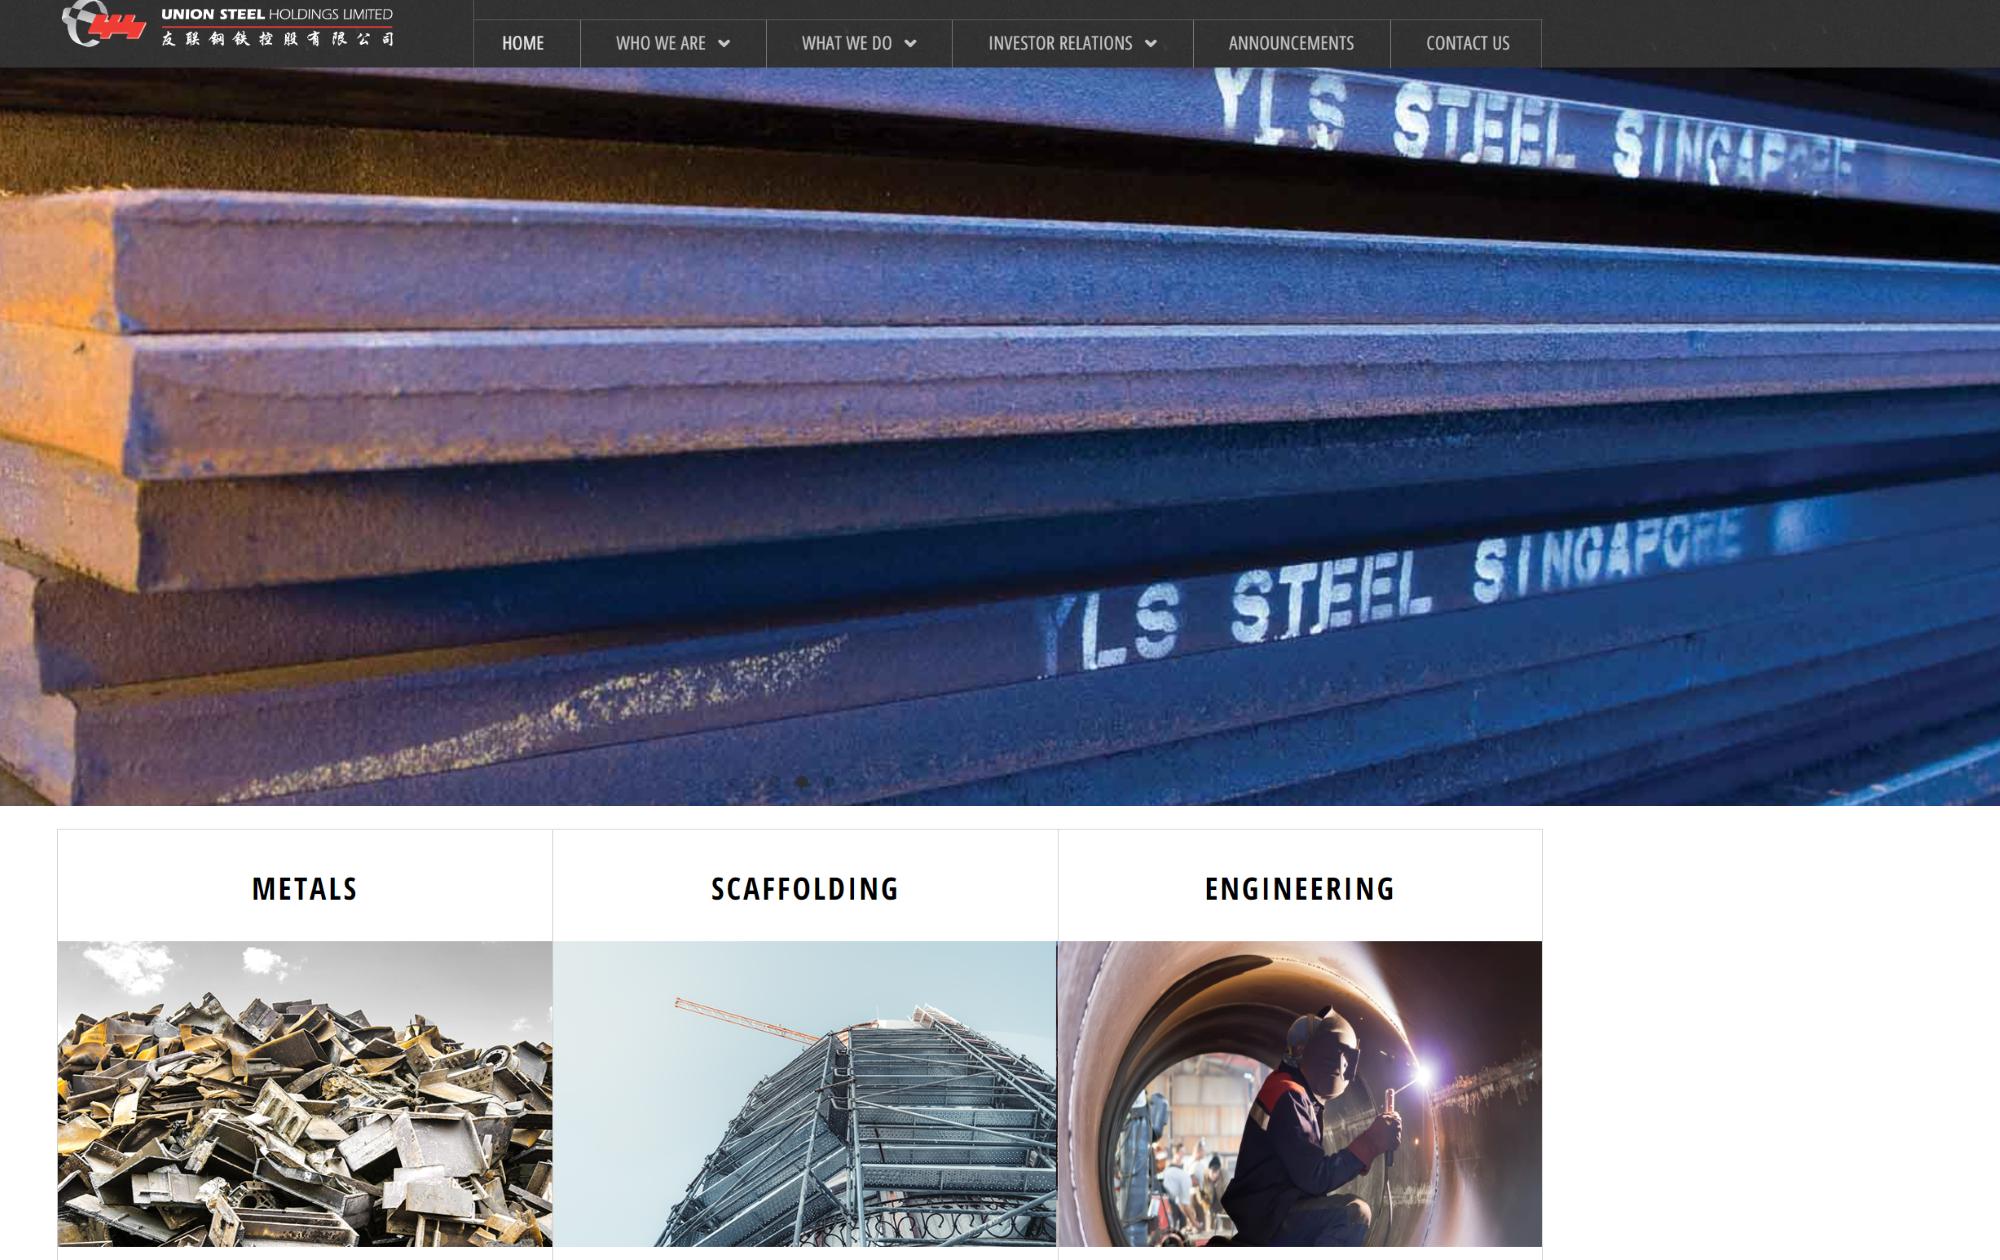 Union Steel Holdings Ltd